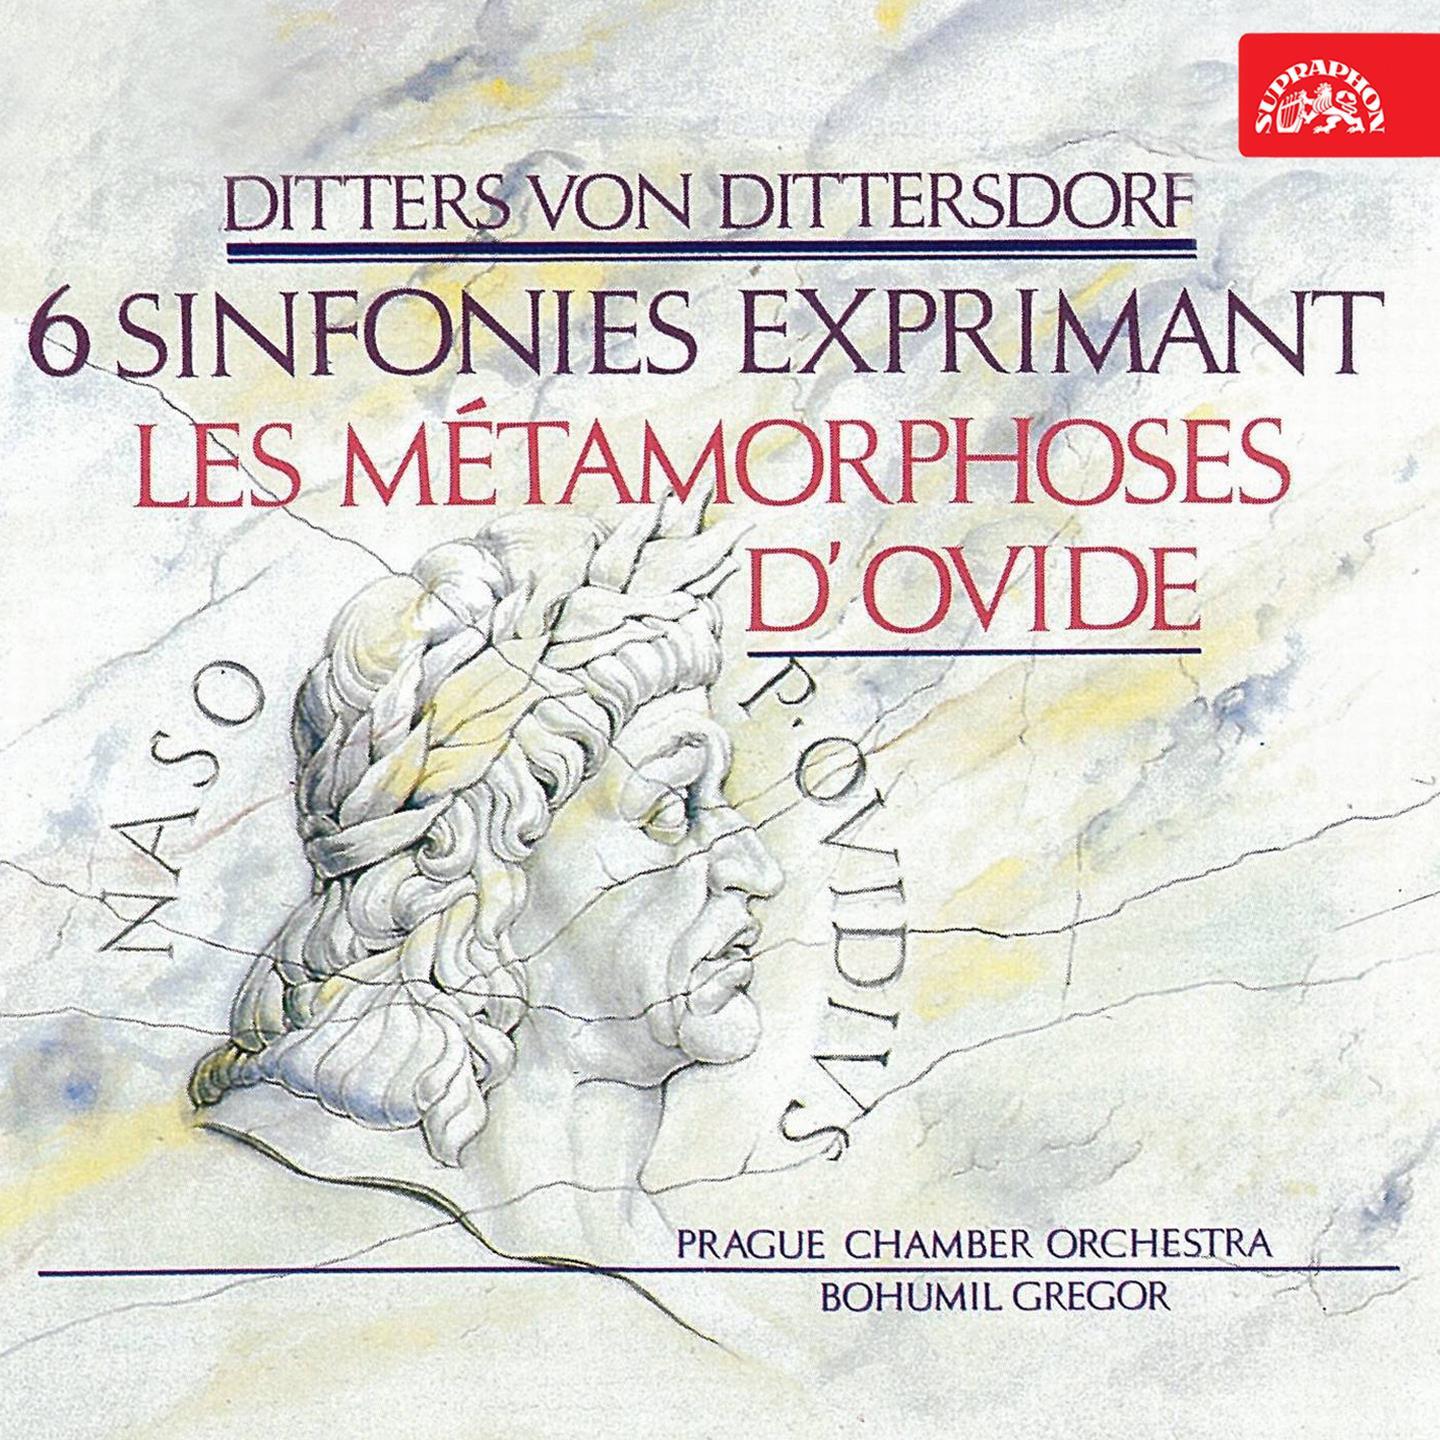 Symphonies After Ovid' s Metamorphoses, No. 6 in A Major, Kr. 78 " Verwandlung der lycischen Bauern in Fr sche": I. Allegretto non troppo presto